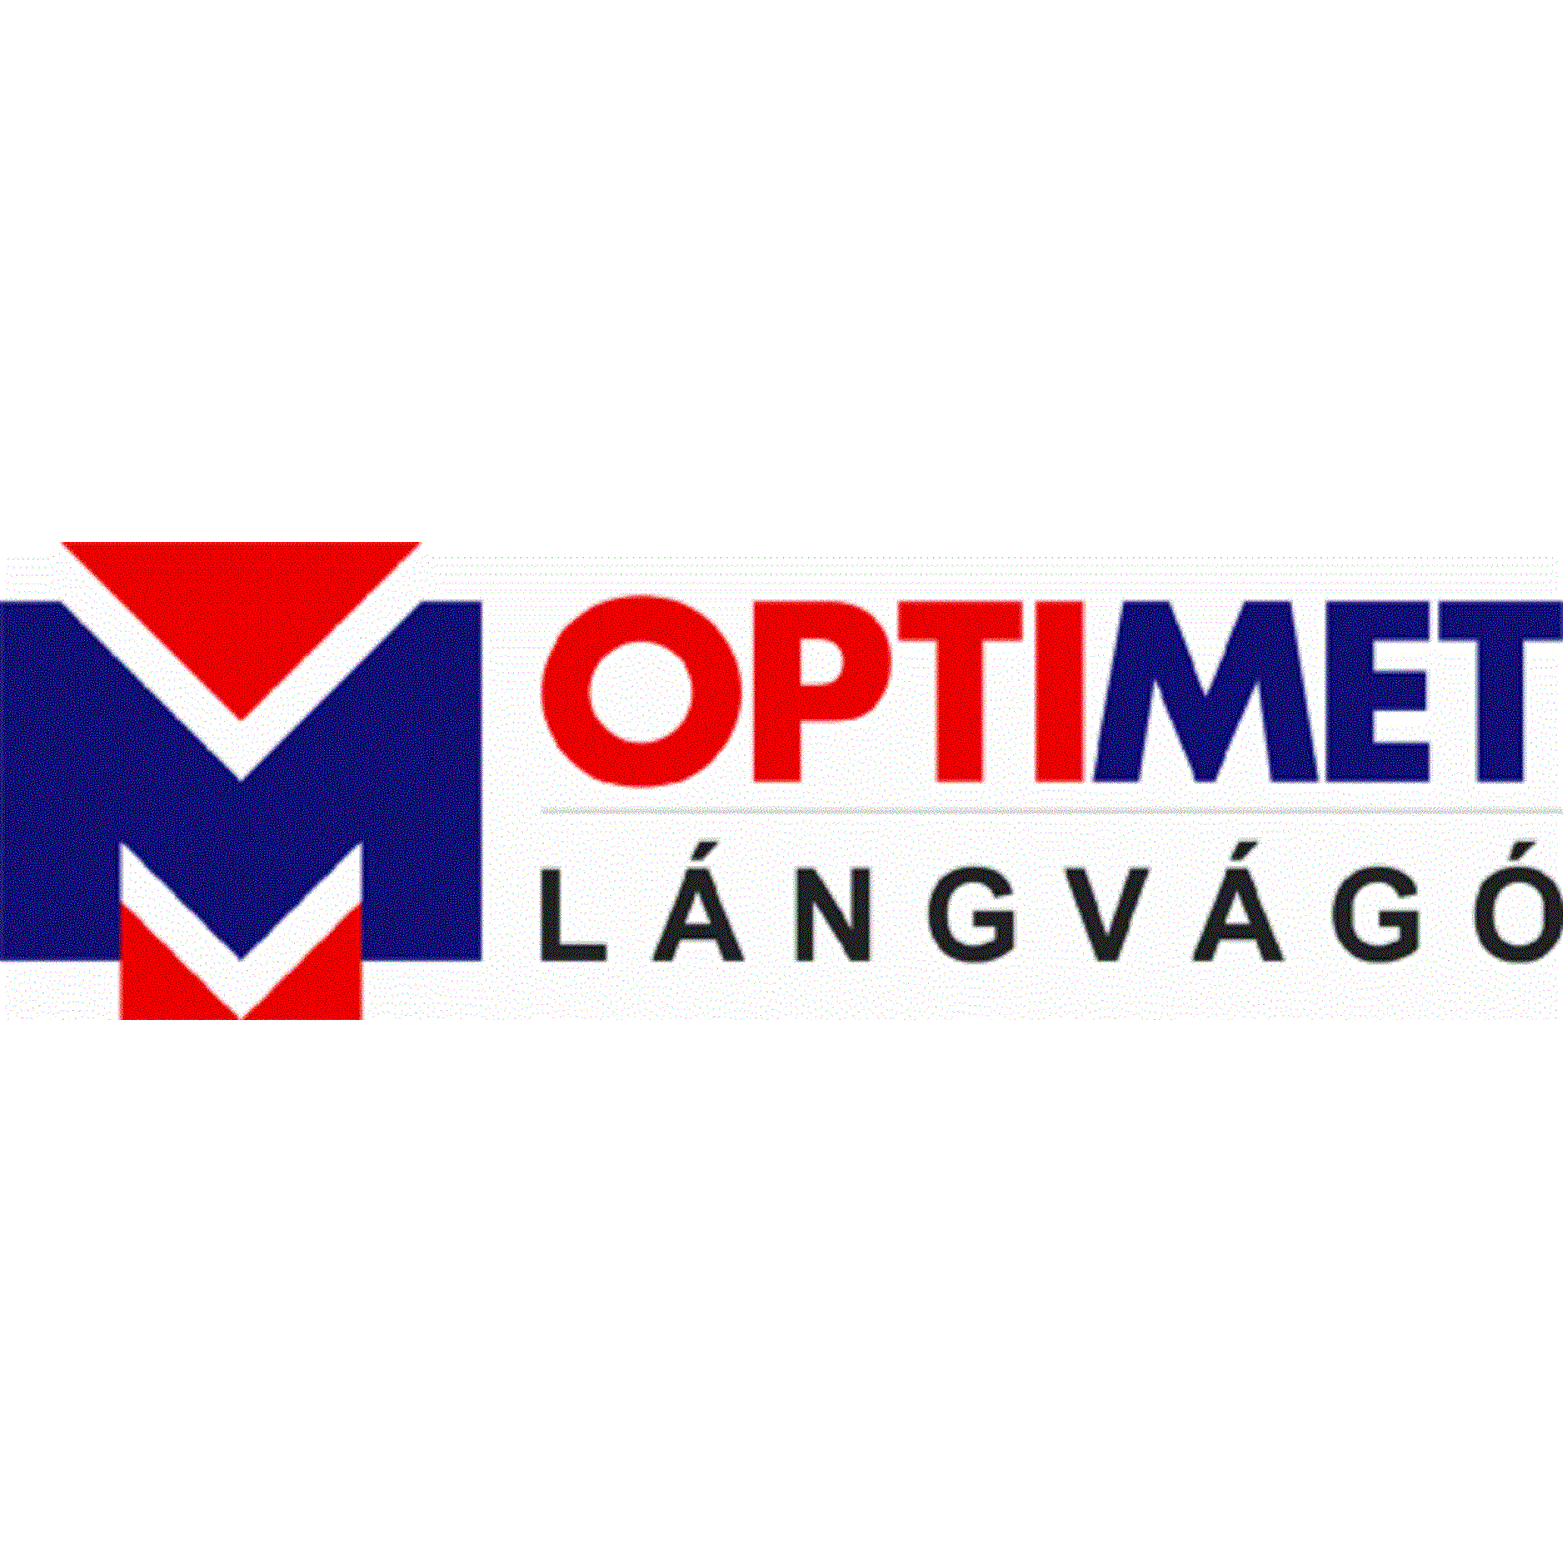 Optimet Fémfeldolgozó, Termelő, Kereskedelmi és Szolgáltató Kft. Logo